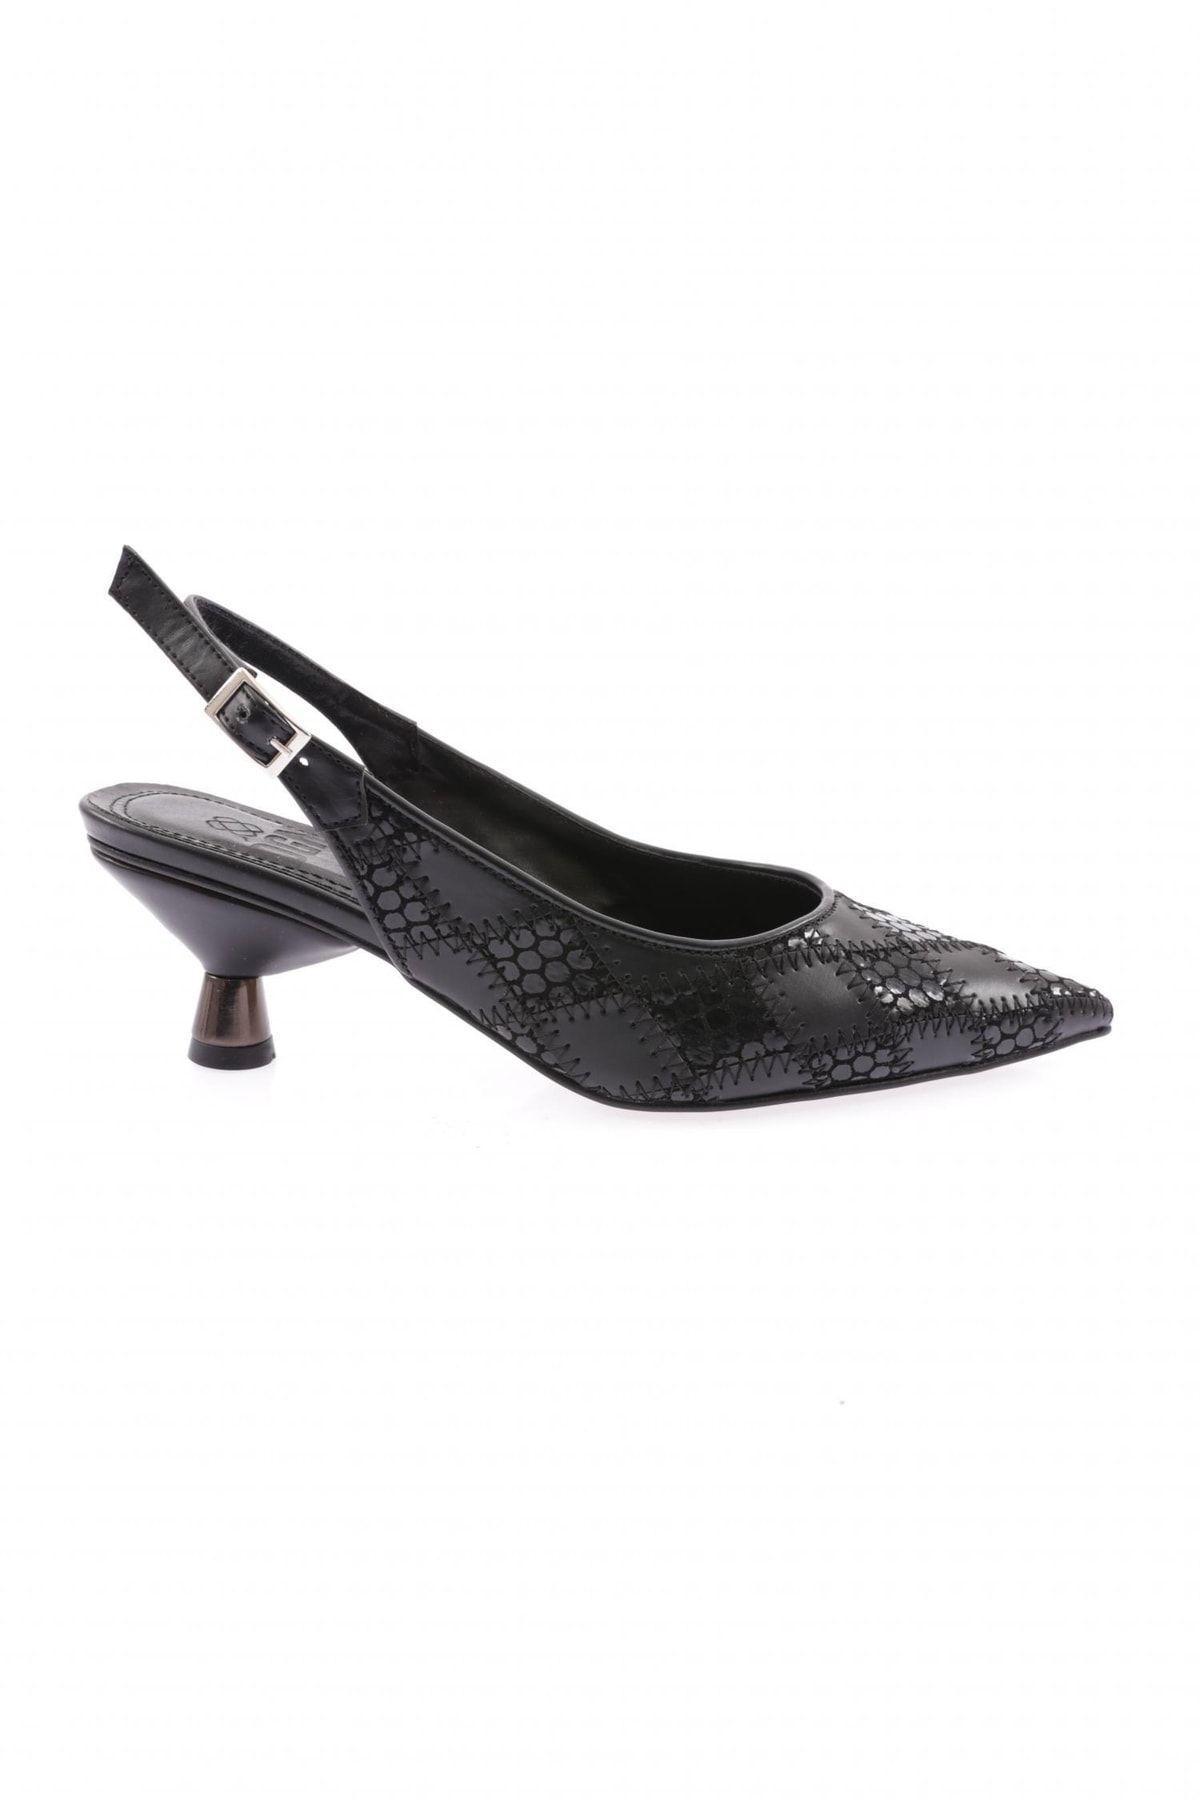 Dgn 1334 Kadın Sivri Burun Arkası Açık Desenli Topuklu Ayakkabı Siyah Siyah